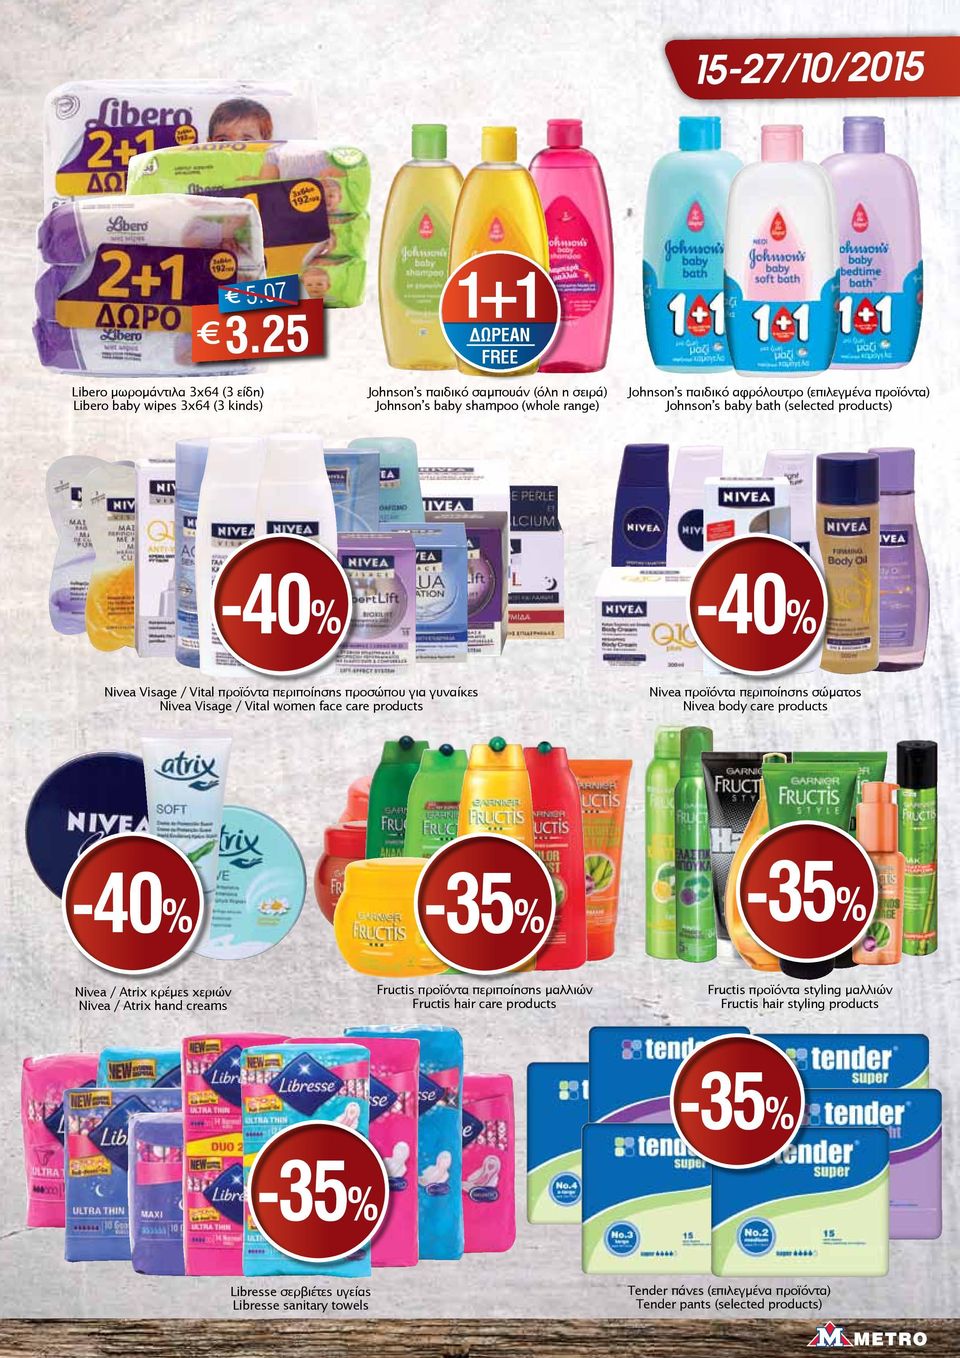 (επιλεγμένα προϊόντα) Johnson s baby bath (selected products) -40% -40% Nivea Visage / Vital προϊόντα περιποίησης προσώπου για γυναίκες Nivea Visage / Vital women face care products